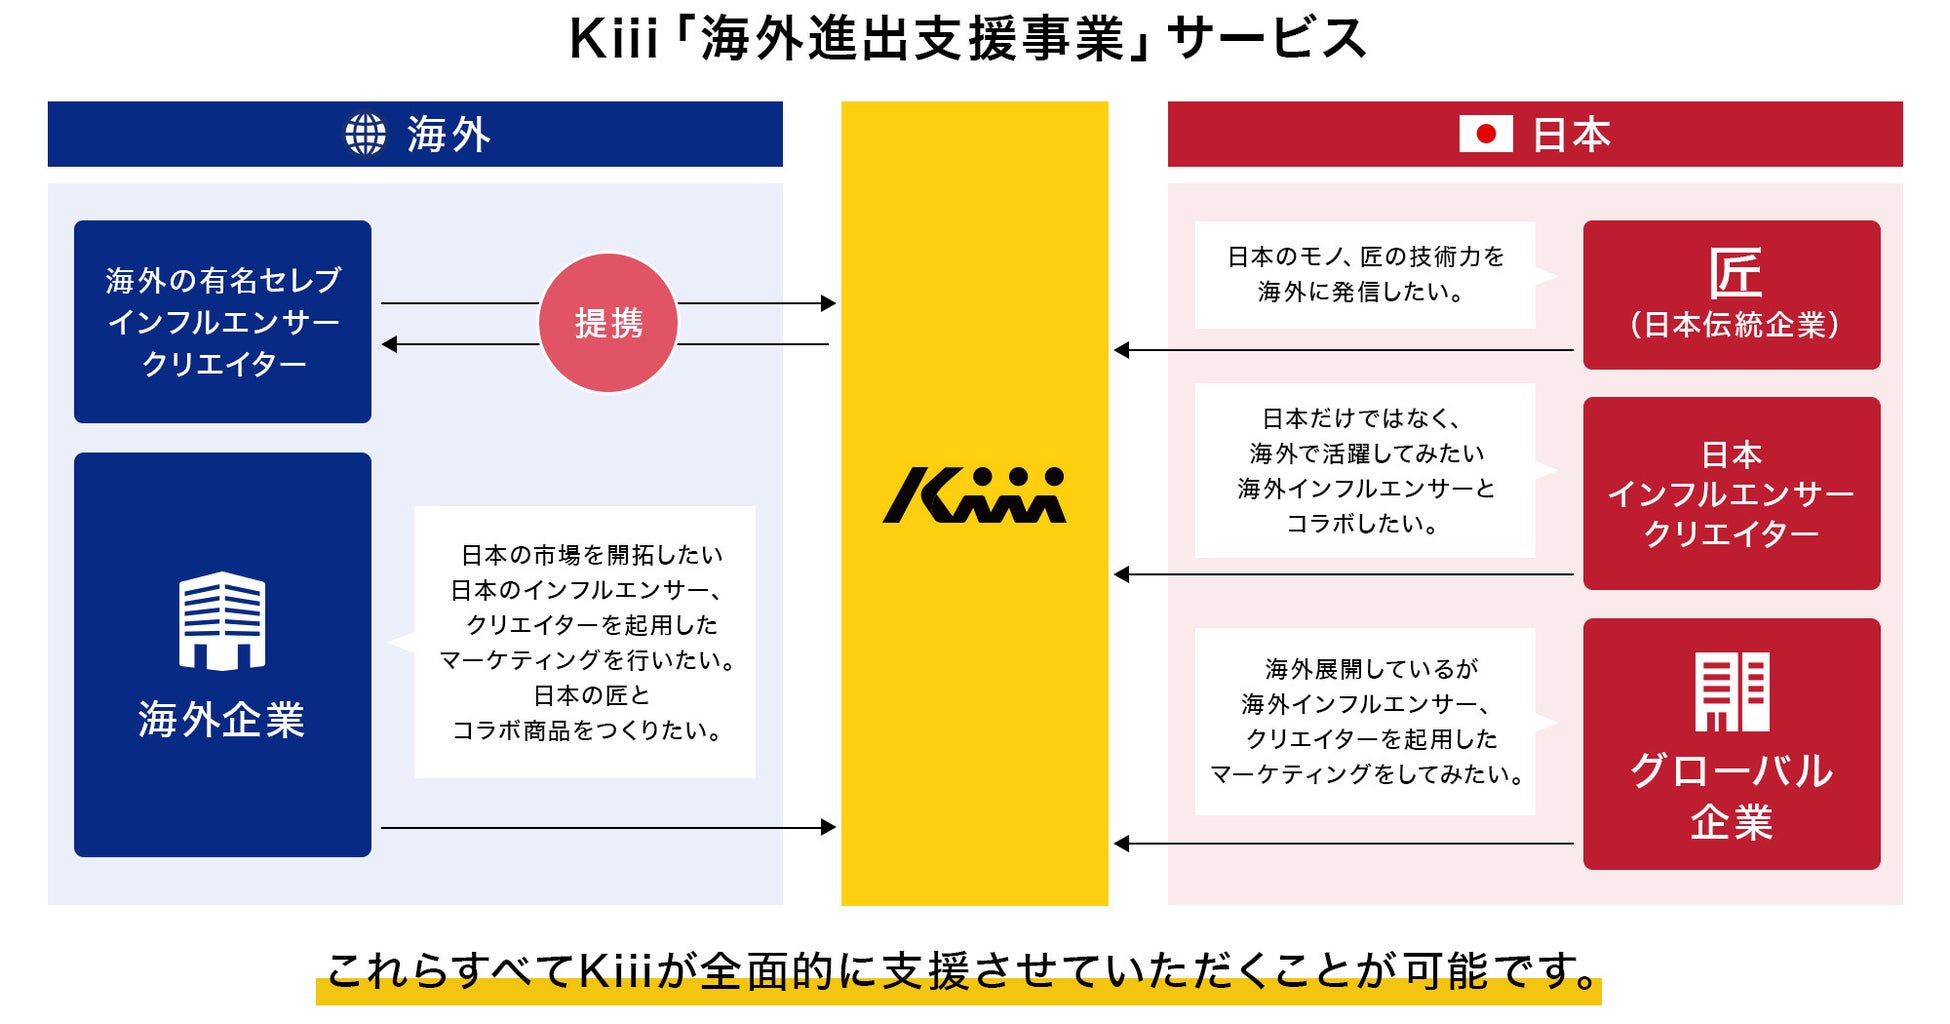 5.3億人へアプローチ　株式会社Kiii「海外進出支援事業」サービス開始のお知らせ